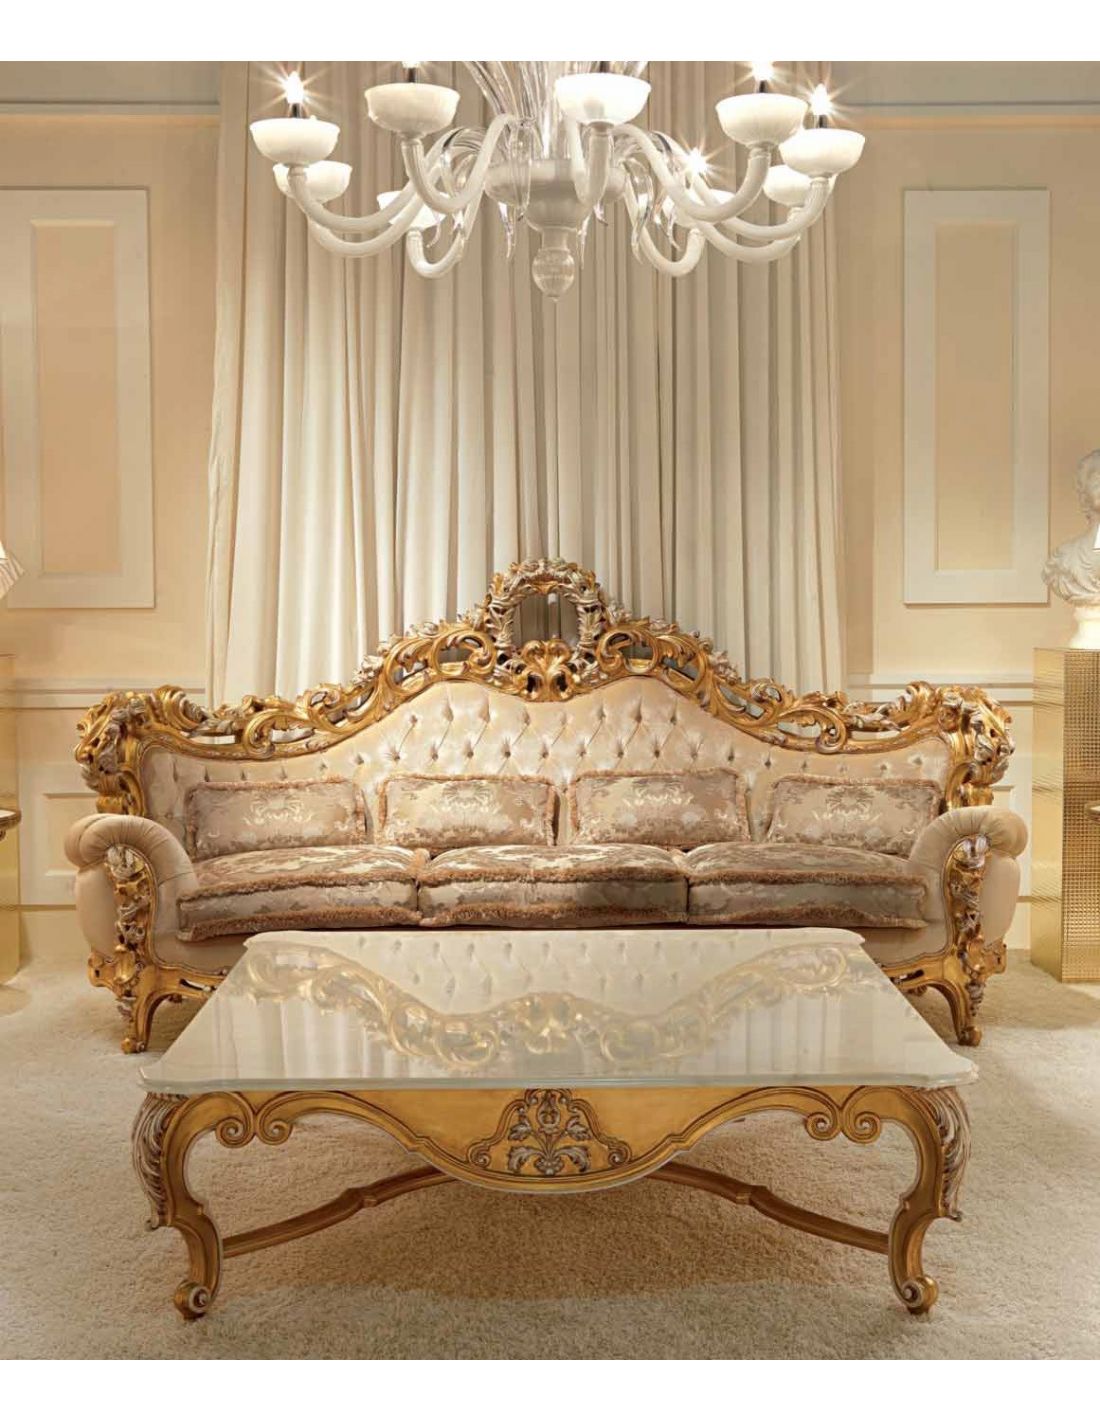 Elegant and Royal Golden Plush Living Room Furniture Set